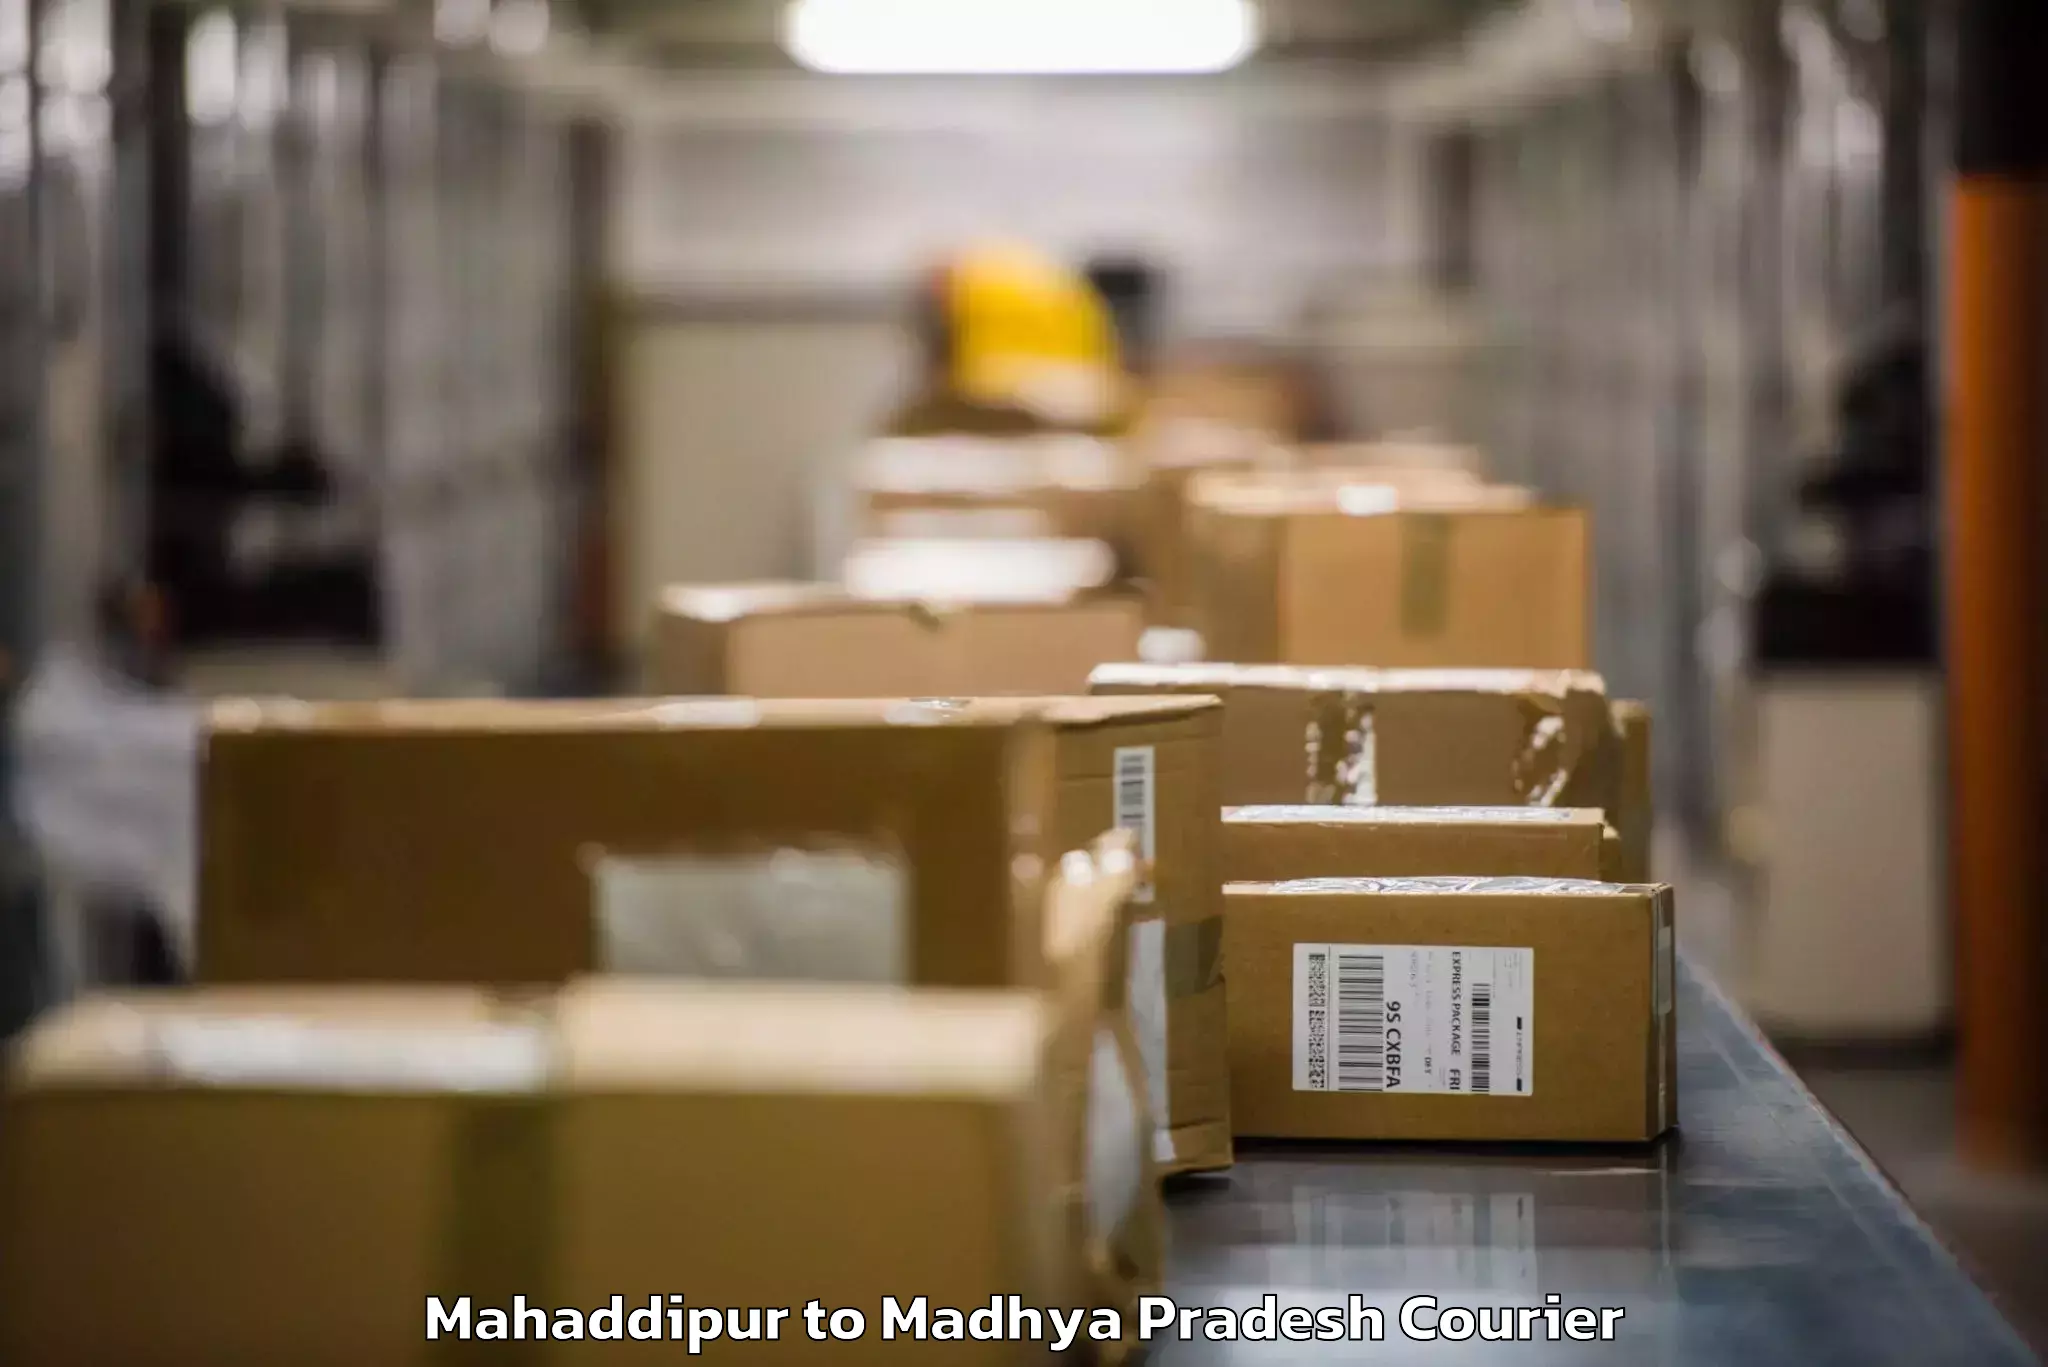 Luggage transport company Mahaddipur to Mandla